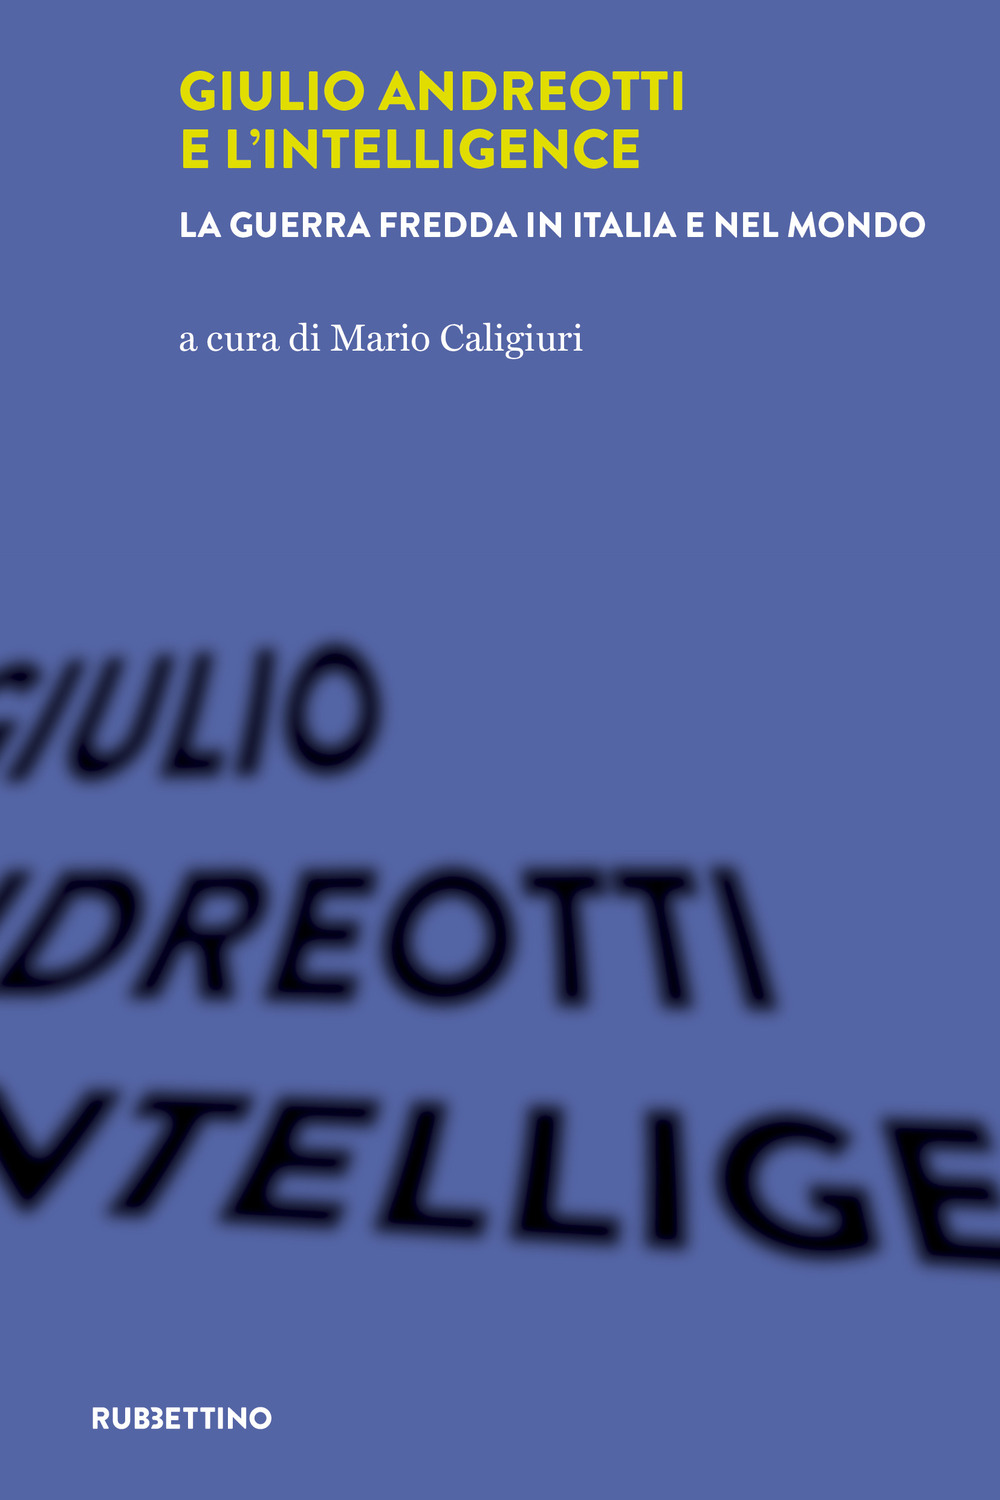 Image of Giulio Andreotti e l'Intelligence. La guerra fredda in Italia e nel mondo